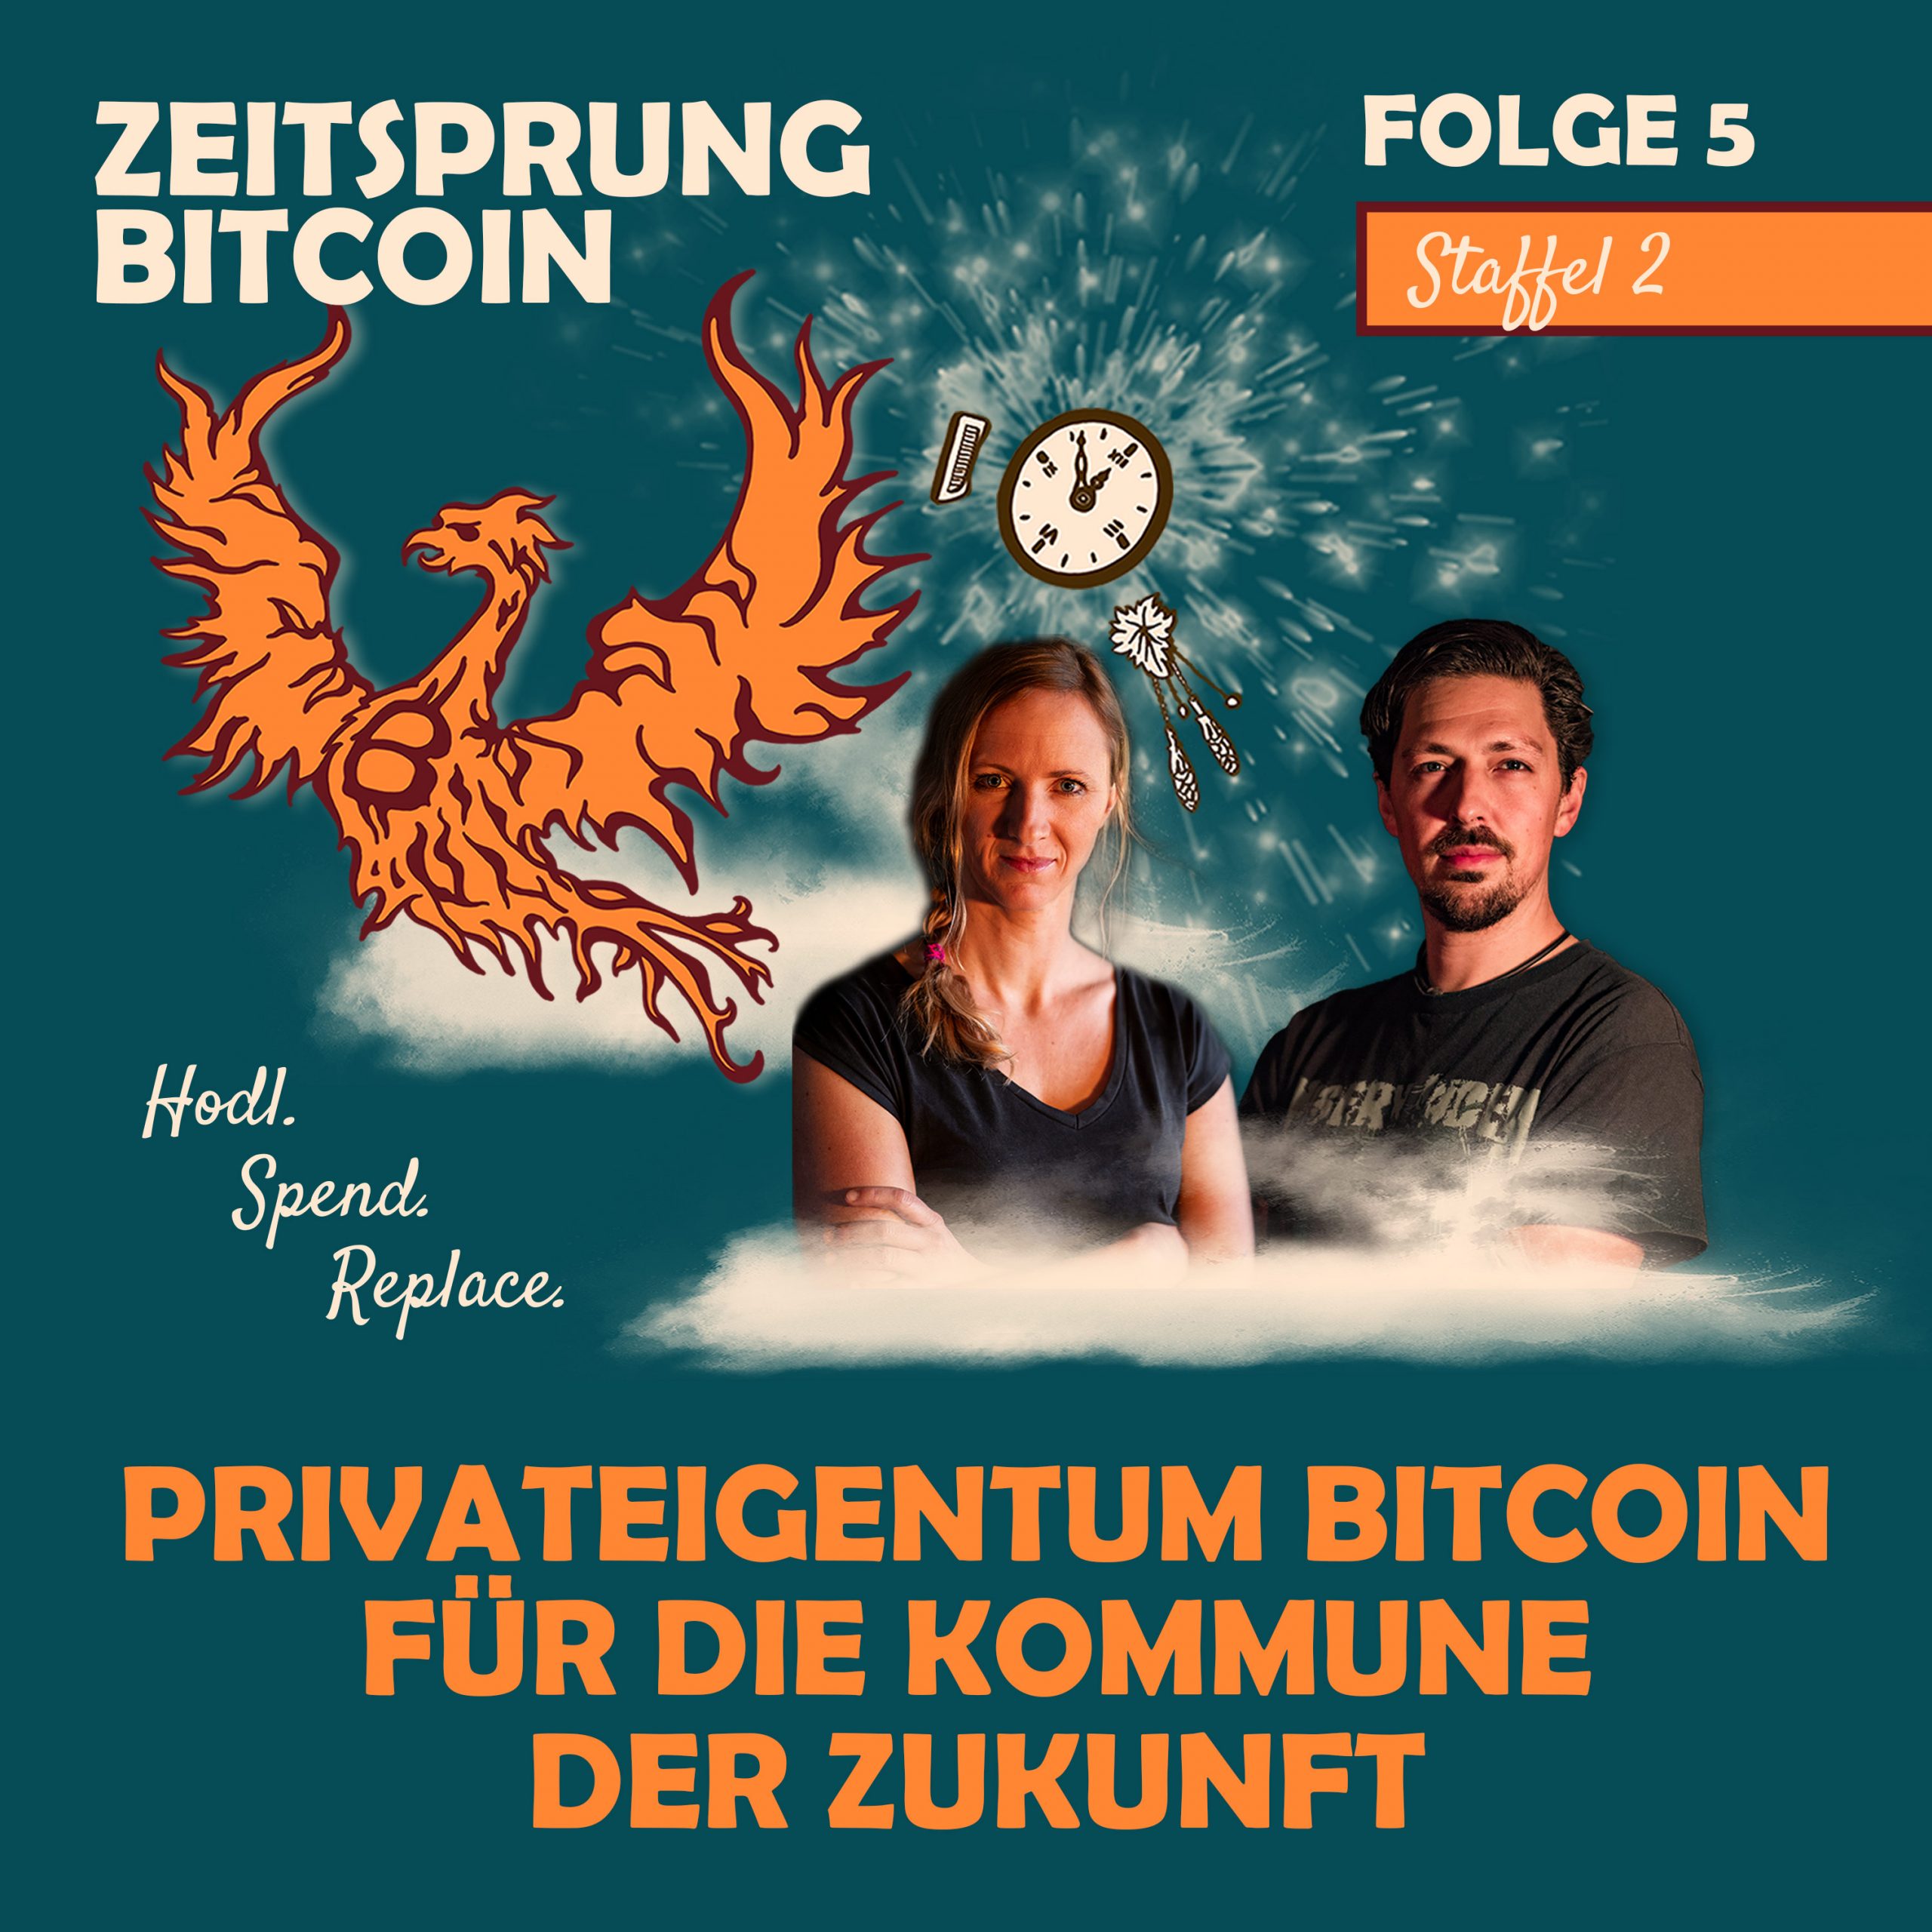 Privateigentum Bitcoin für die Zukunft der Kommune